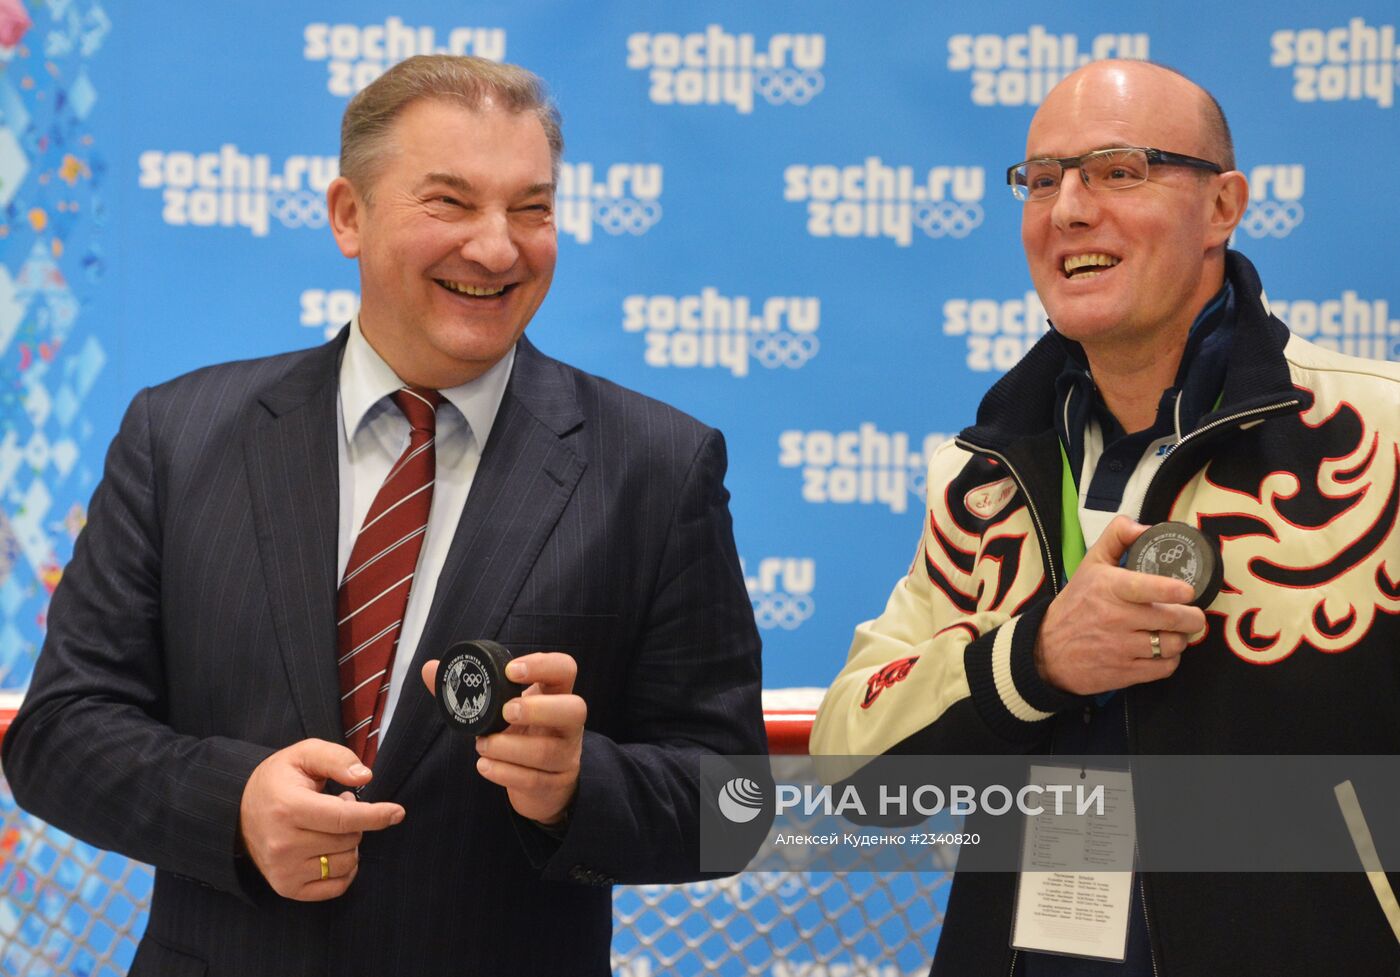 Презентация официальных шайб хоккейных турниров зимних Олимпийских и Паралимпийских игр в Сочи